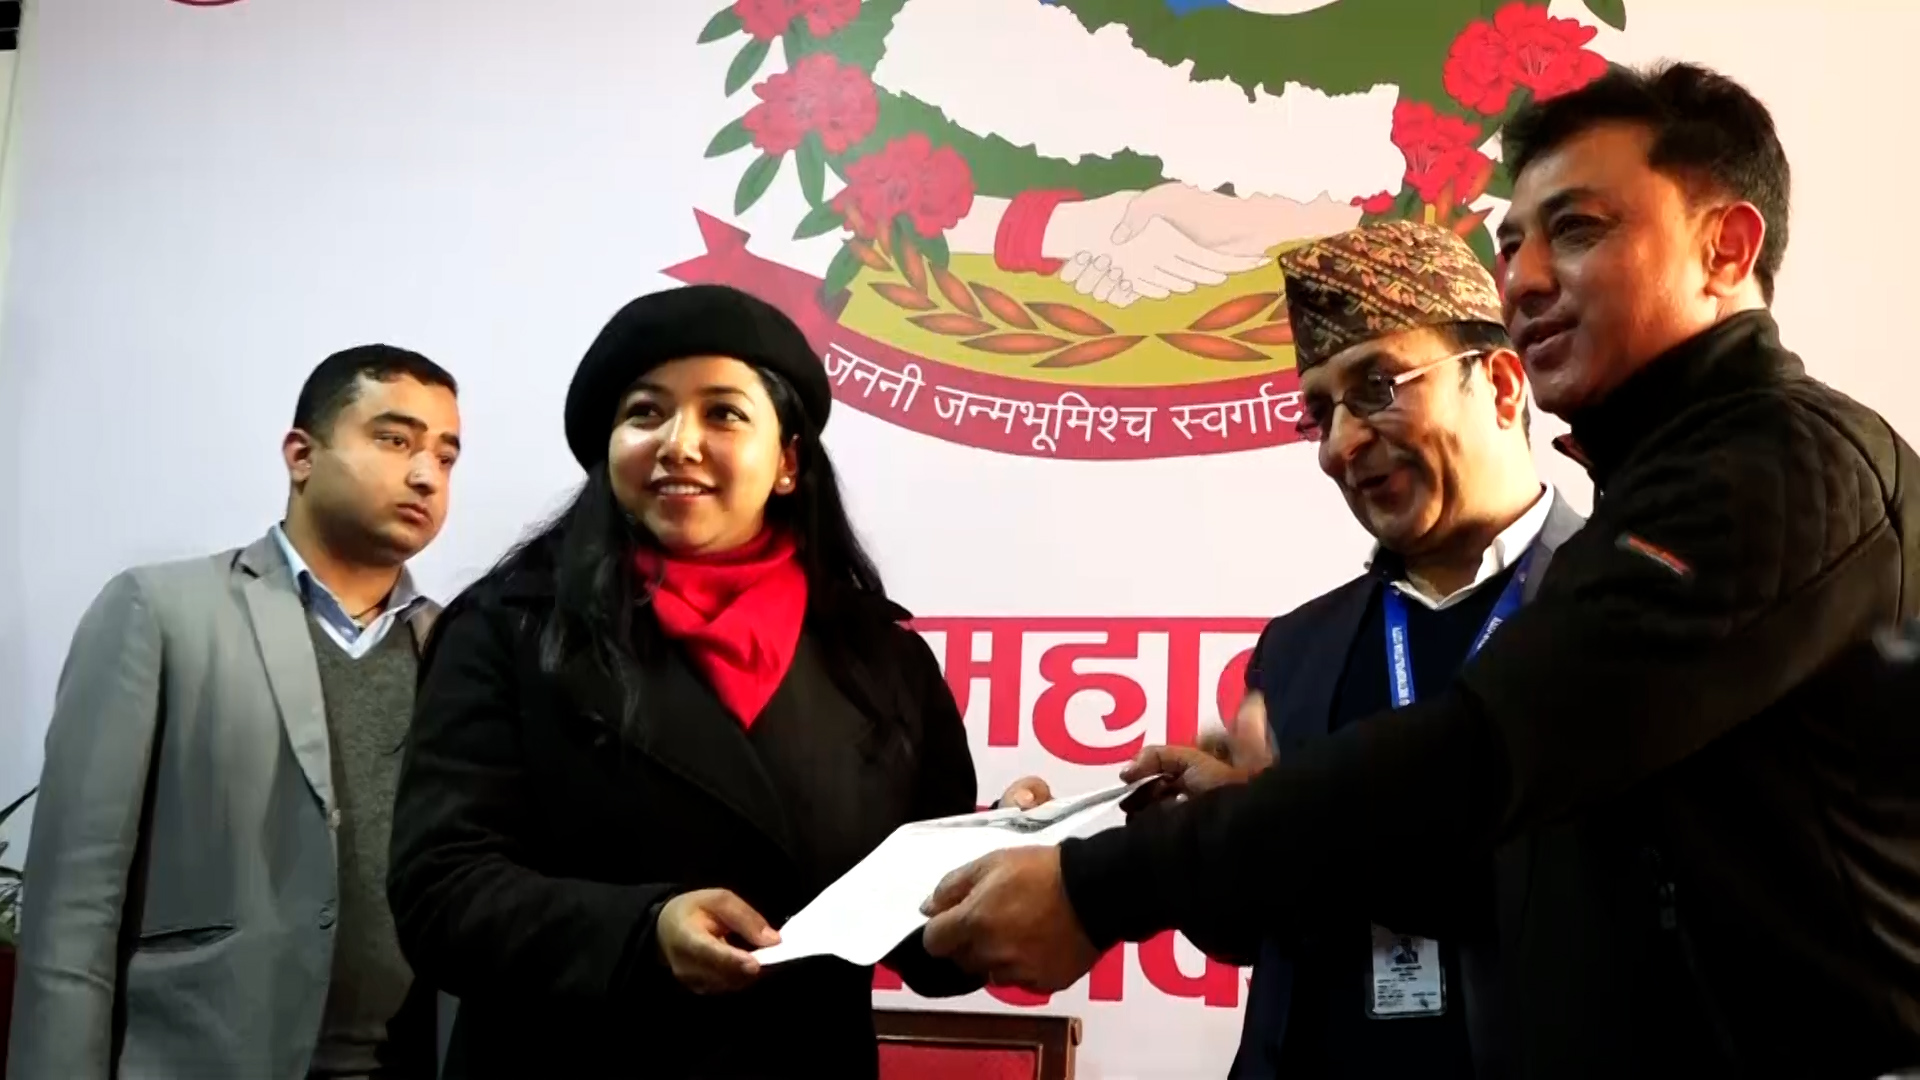 काठमाडौं महानगरः टुँडिखेललाई भूमिगत पार्किङ बनाउने निर्णय रोक्न माग {भिडियो}